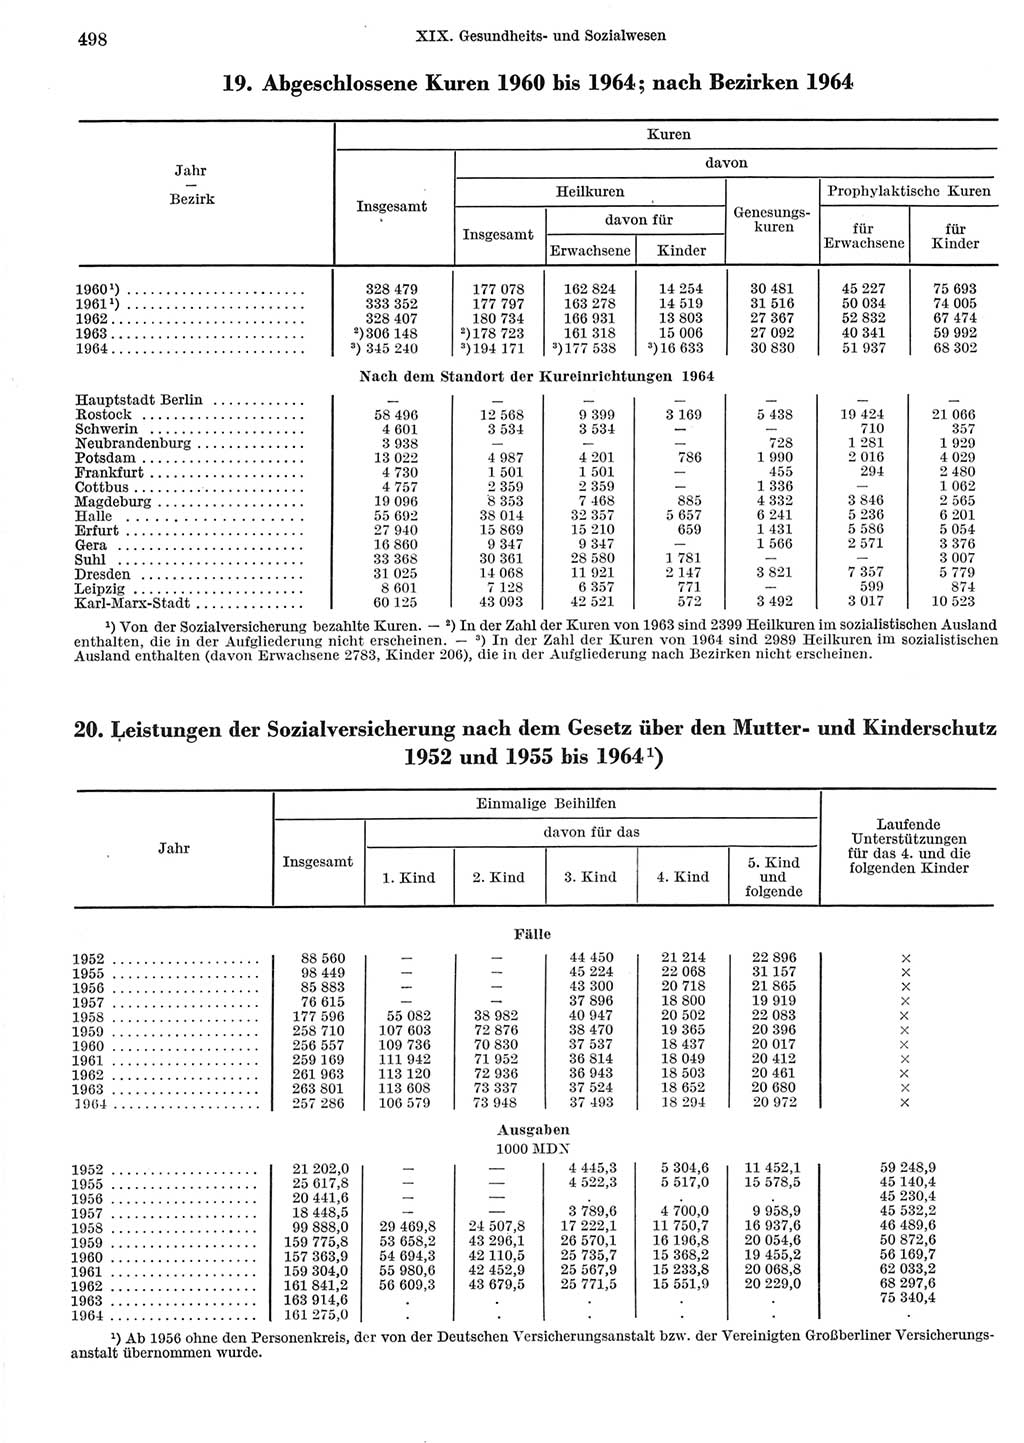 Statistisches Jahrbuch der Deutschen Demokratischen Republik (DDR) 1965, Seite 498 (Stat. Jb. DDR 1965, S. 498)